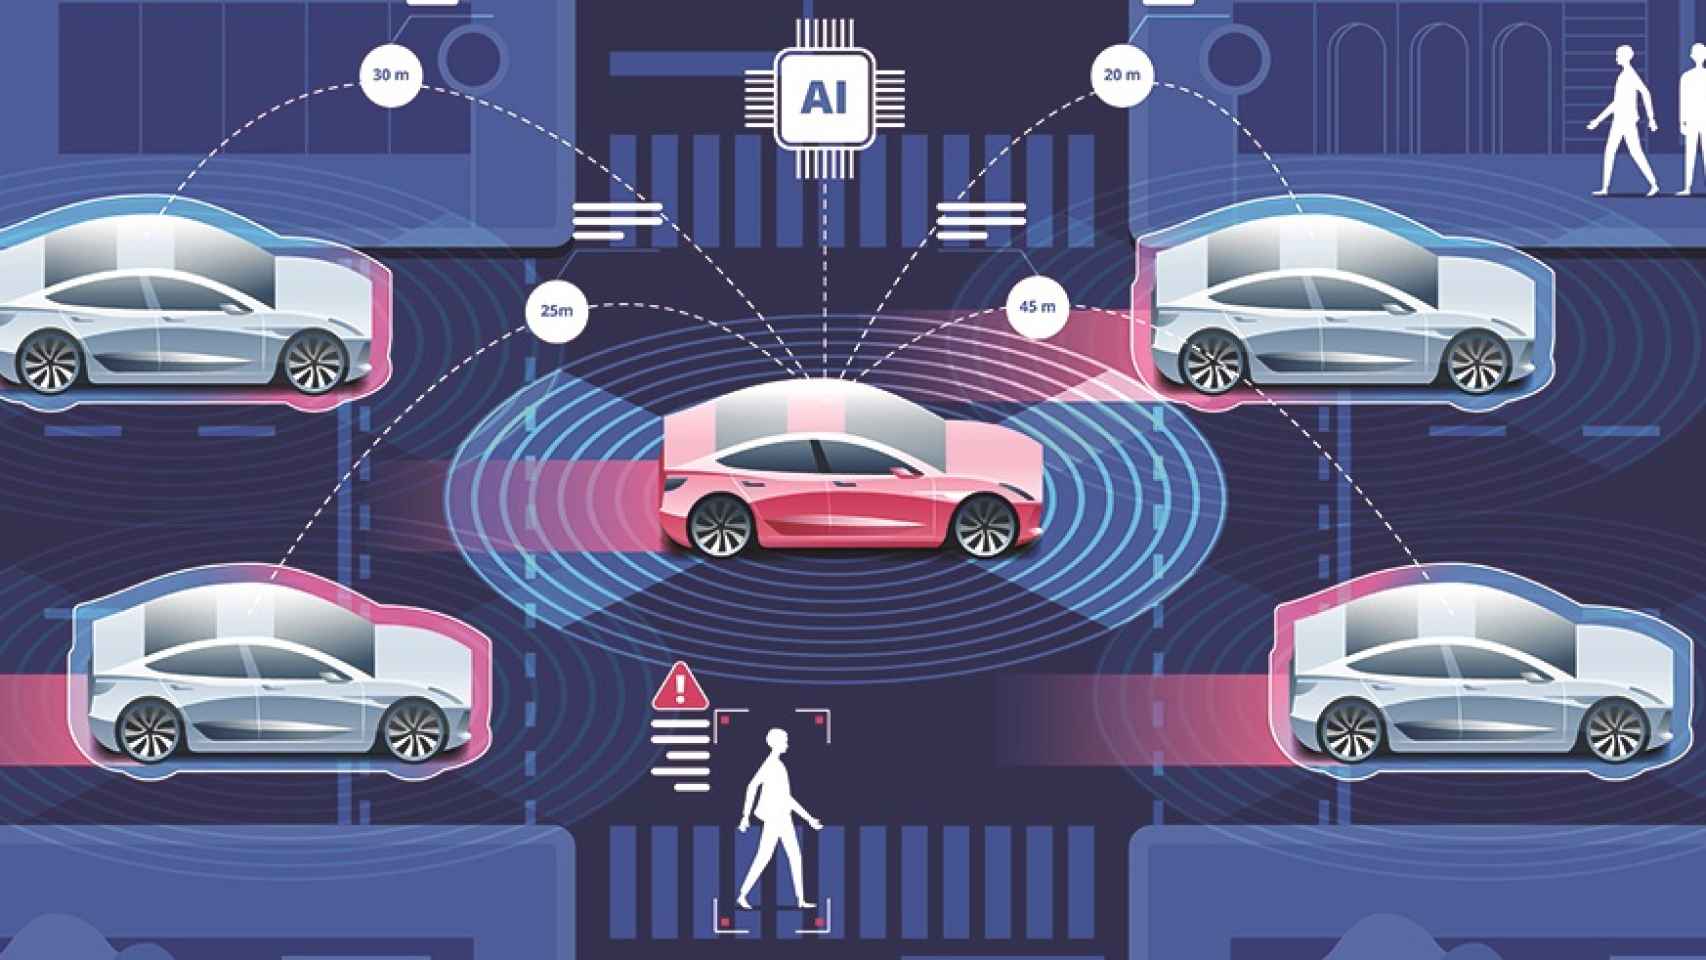 5G y V2X, tecnologías claves para el desarrollo del coche conectado